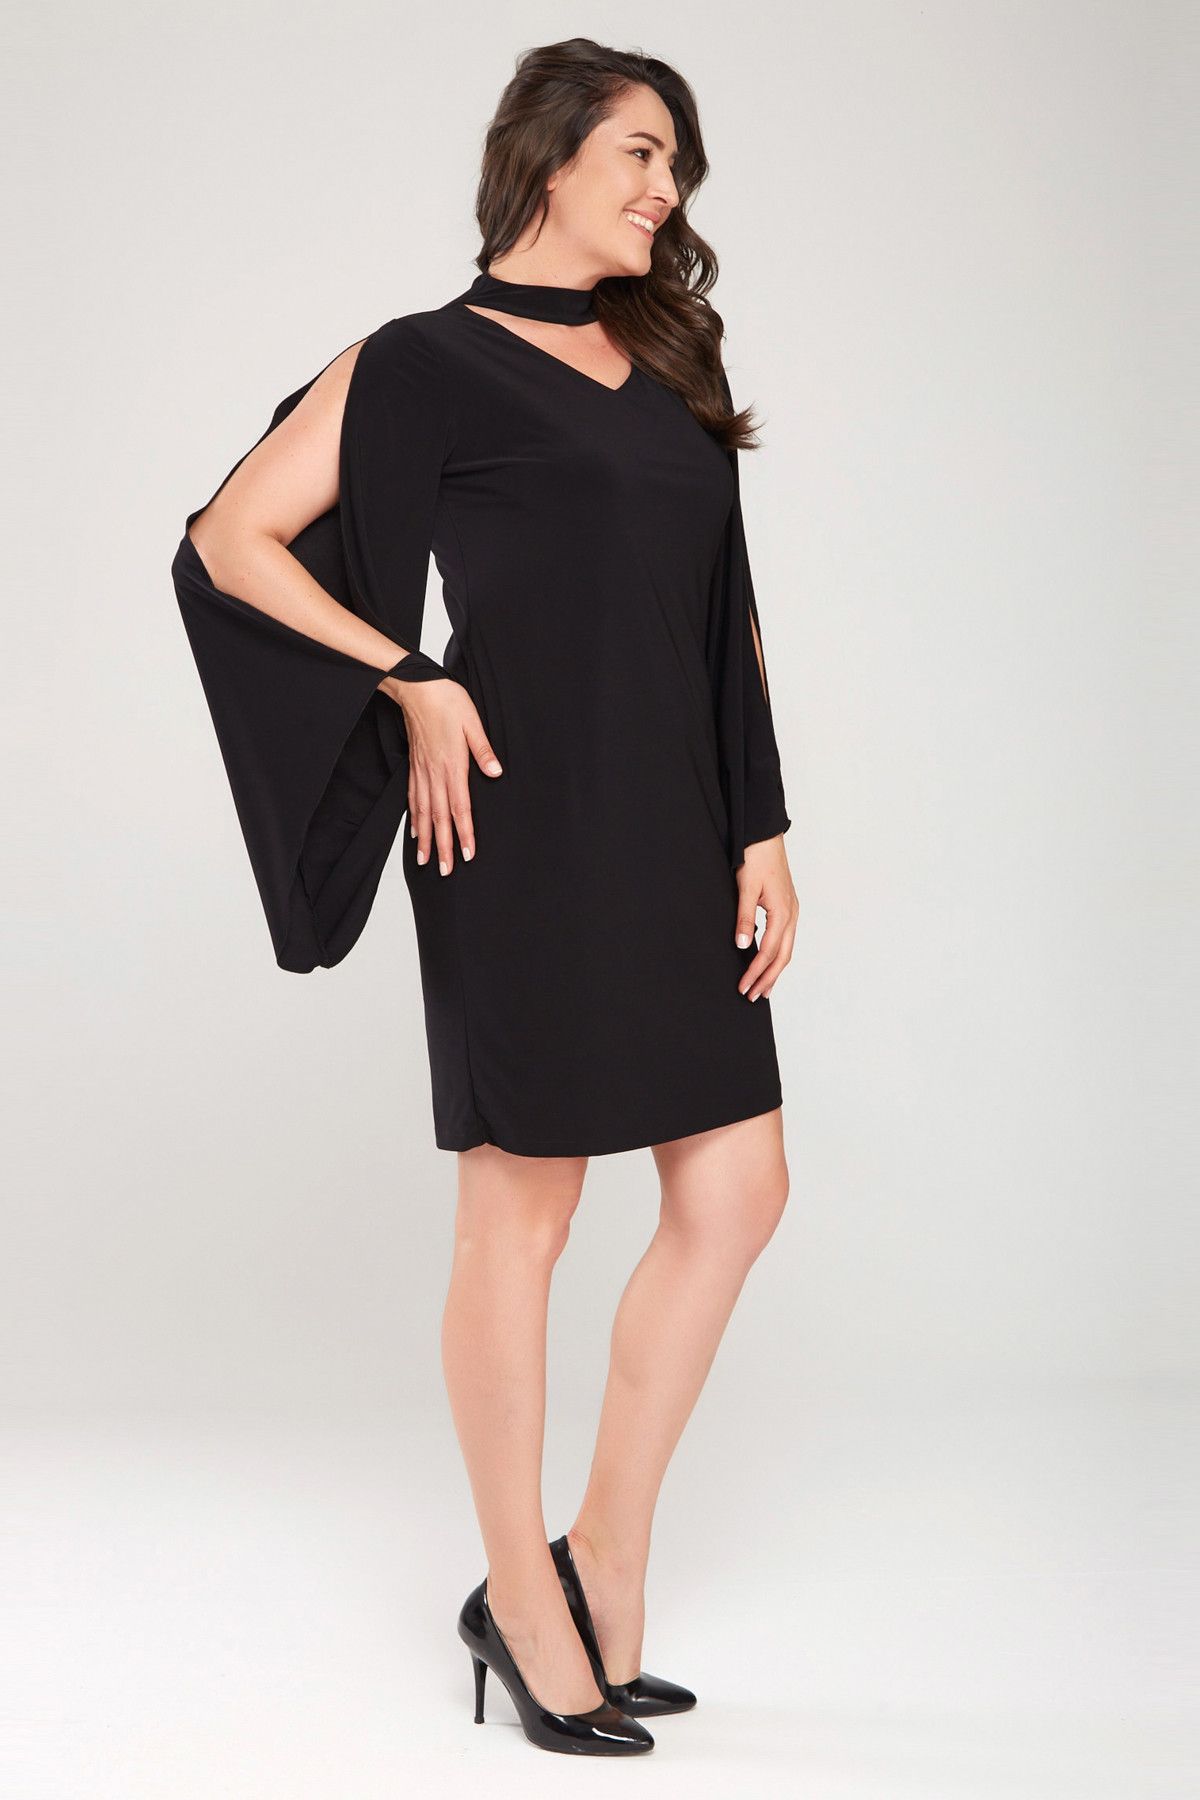 Laranor Kadın Siyah Kol Detaylı Elbise 17LB9098